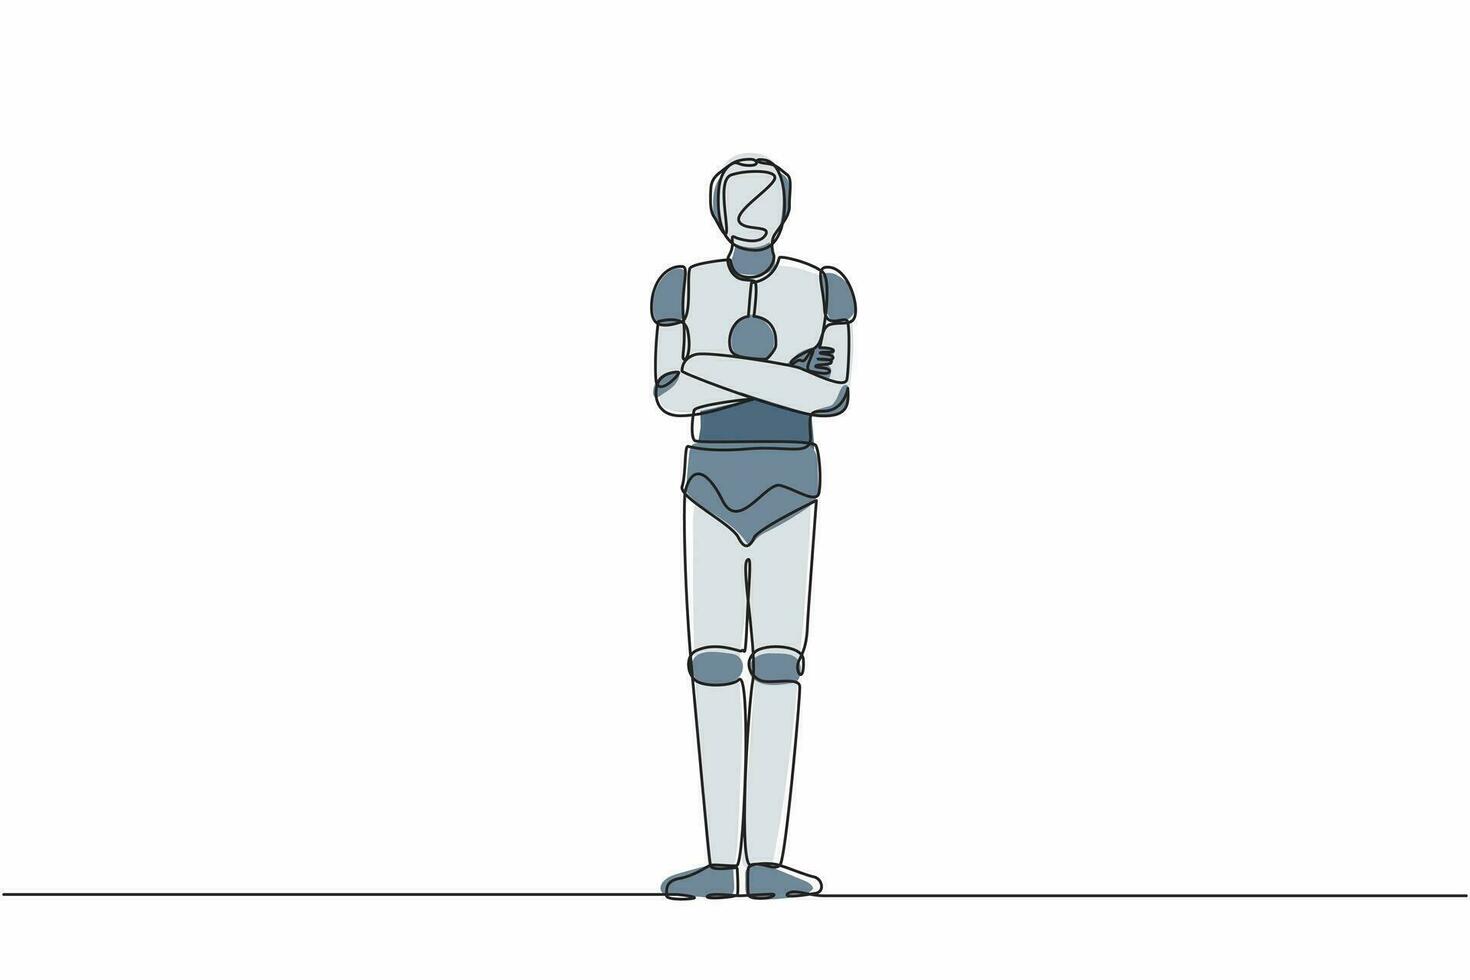 único robô de desenho de linha em pé com pose de braços cruzados. desenvolvimento tecnológico futuro. processos de inteligência artificial e aprendizado de máquina. ilustração em vetor gráfico de design de linha contínua